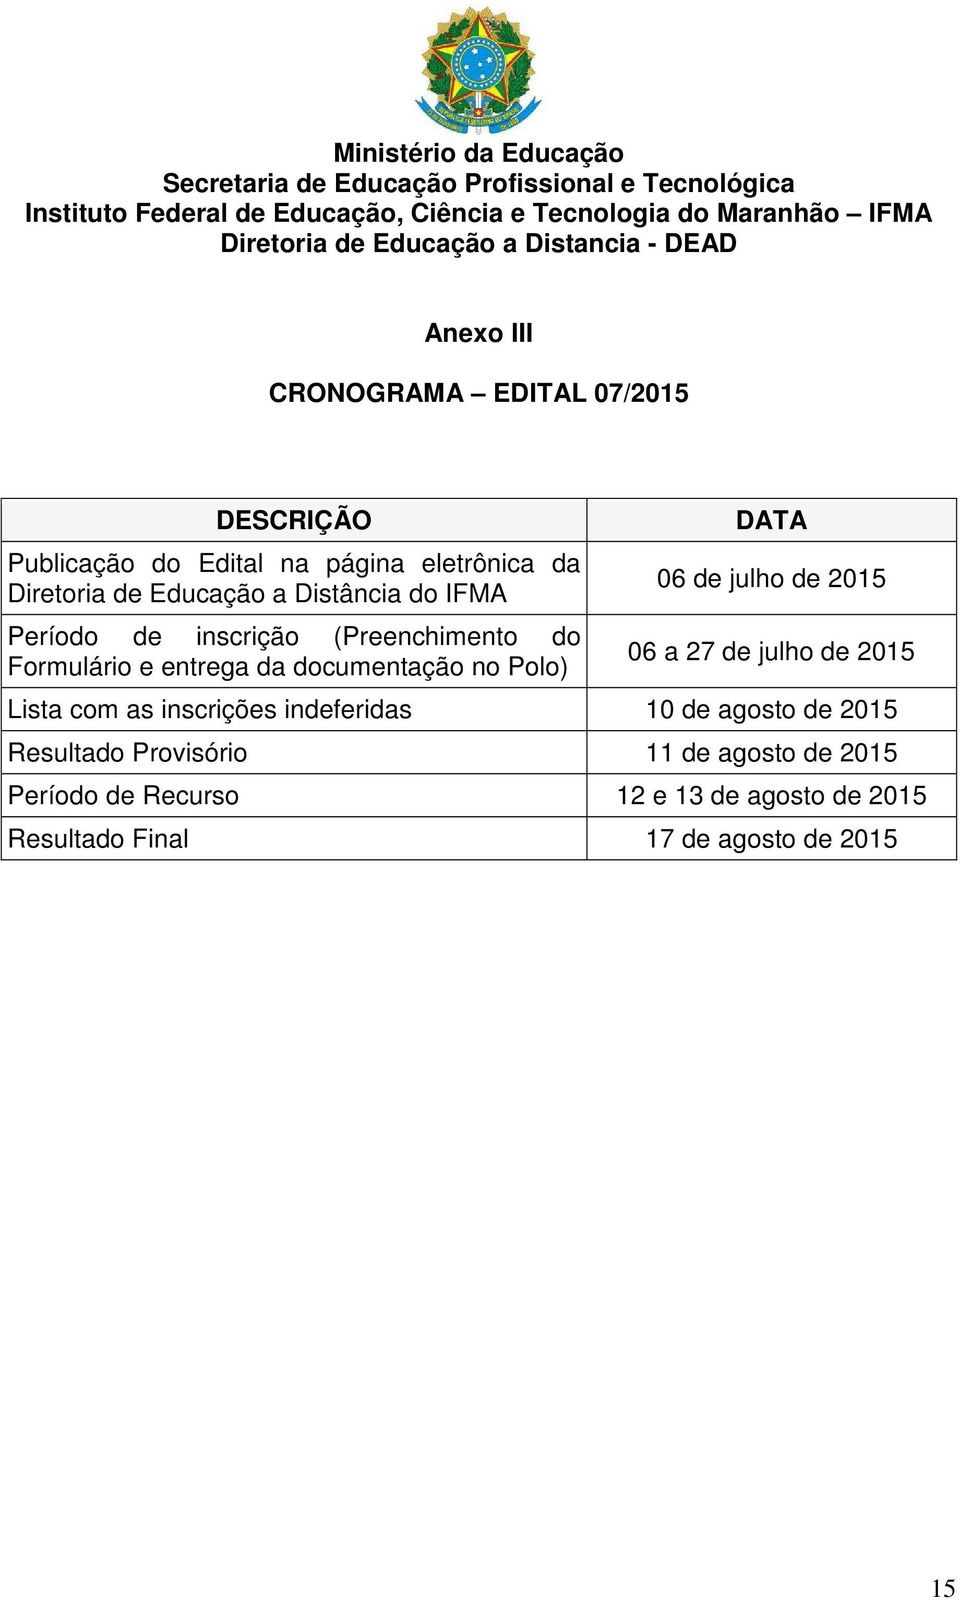 IFMA Período de inscrição (Preenchimento do Formulário e entrega da documentação no Polo) DATA 06 de julho de 2015 06 a 27 de julho de 2015 Lista com as